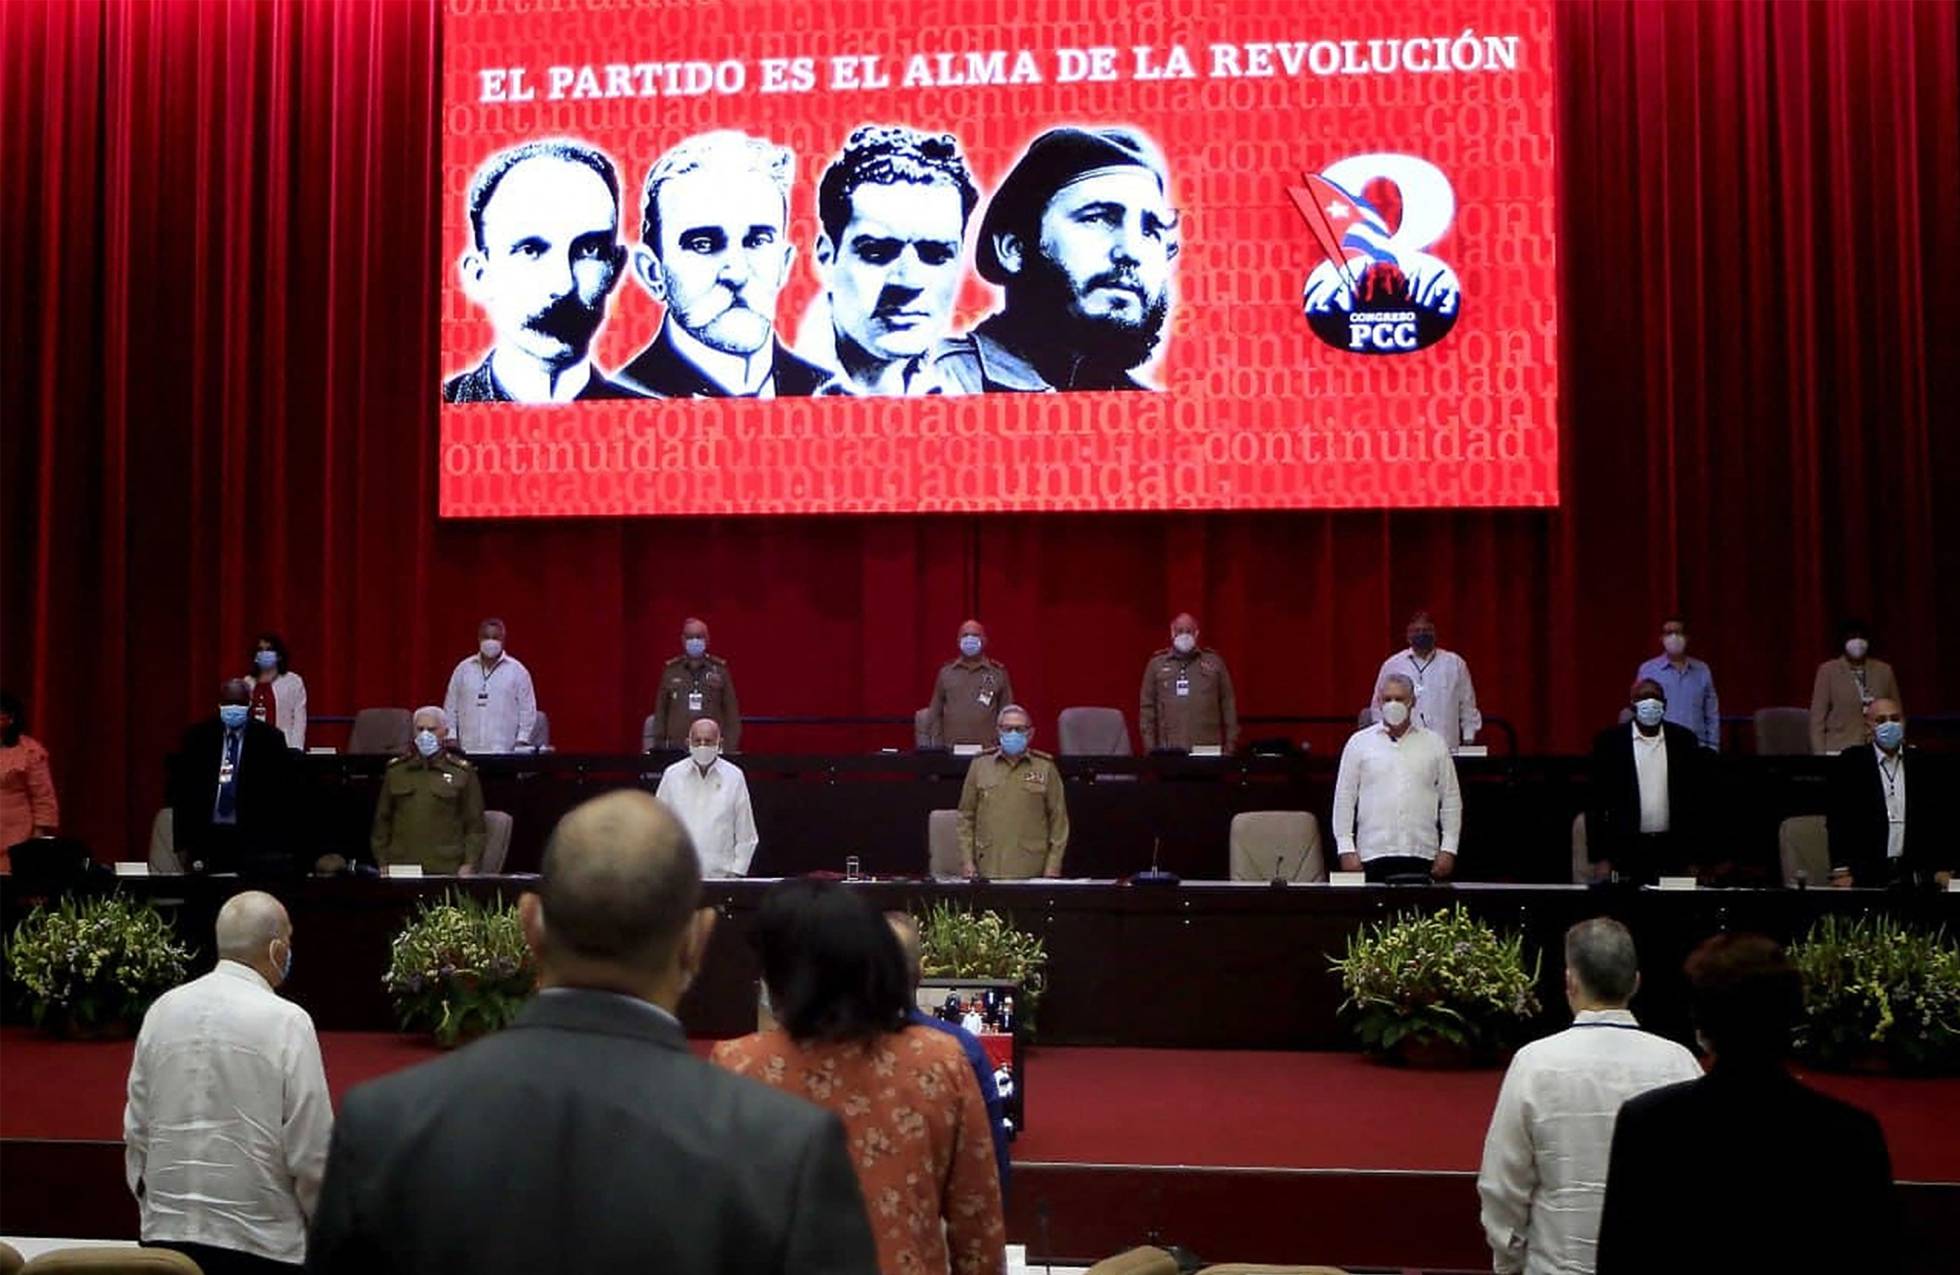 Las criptomonedas entran en los lineamientos del Partido Comunista Cubano